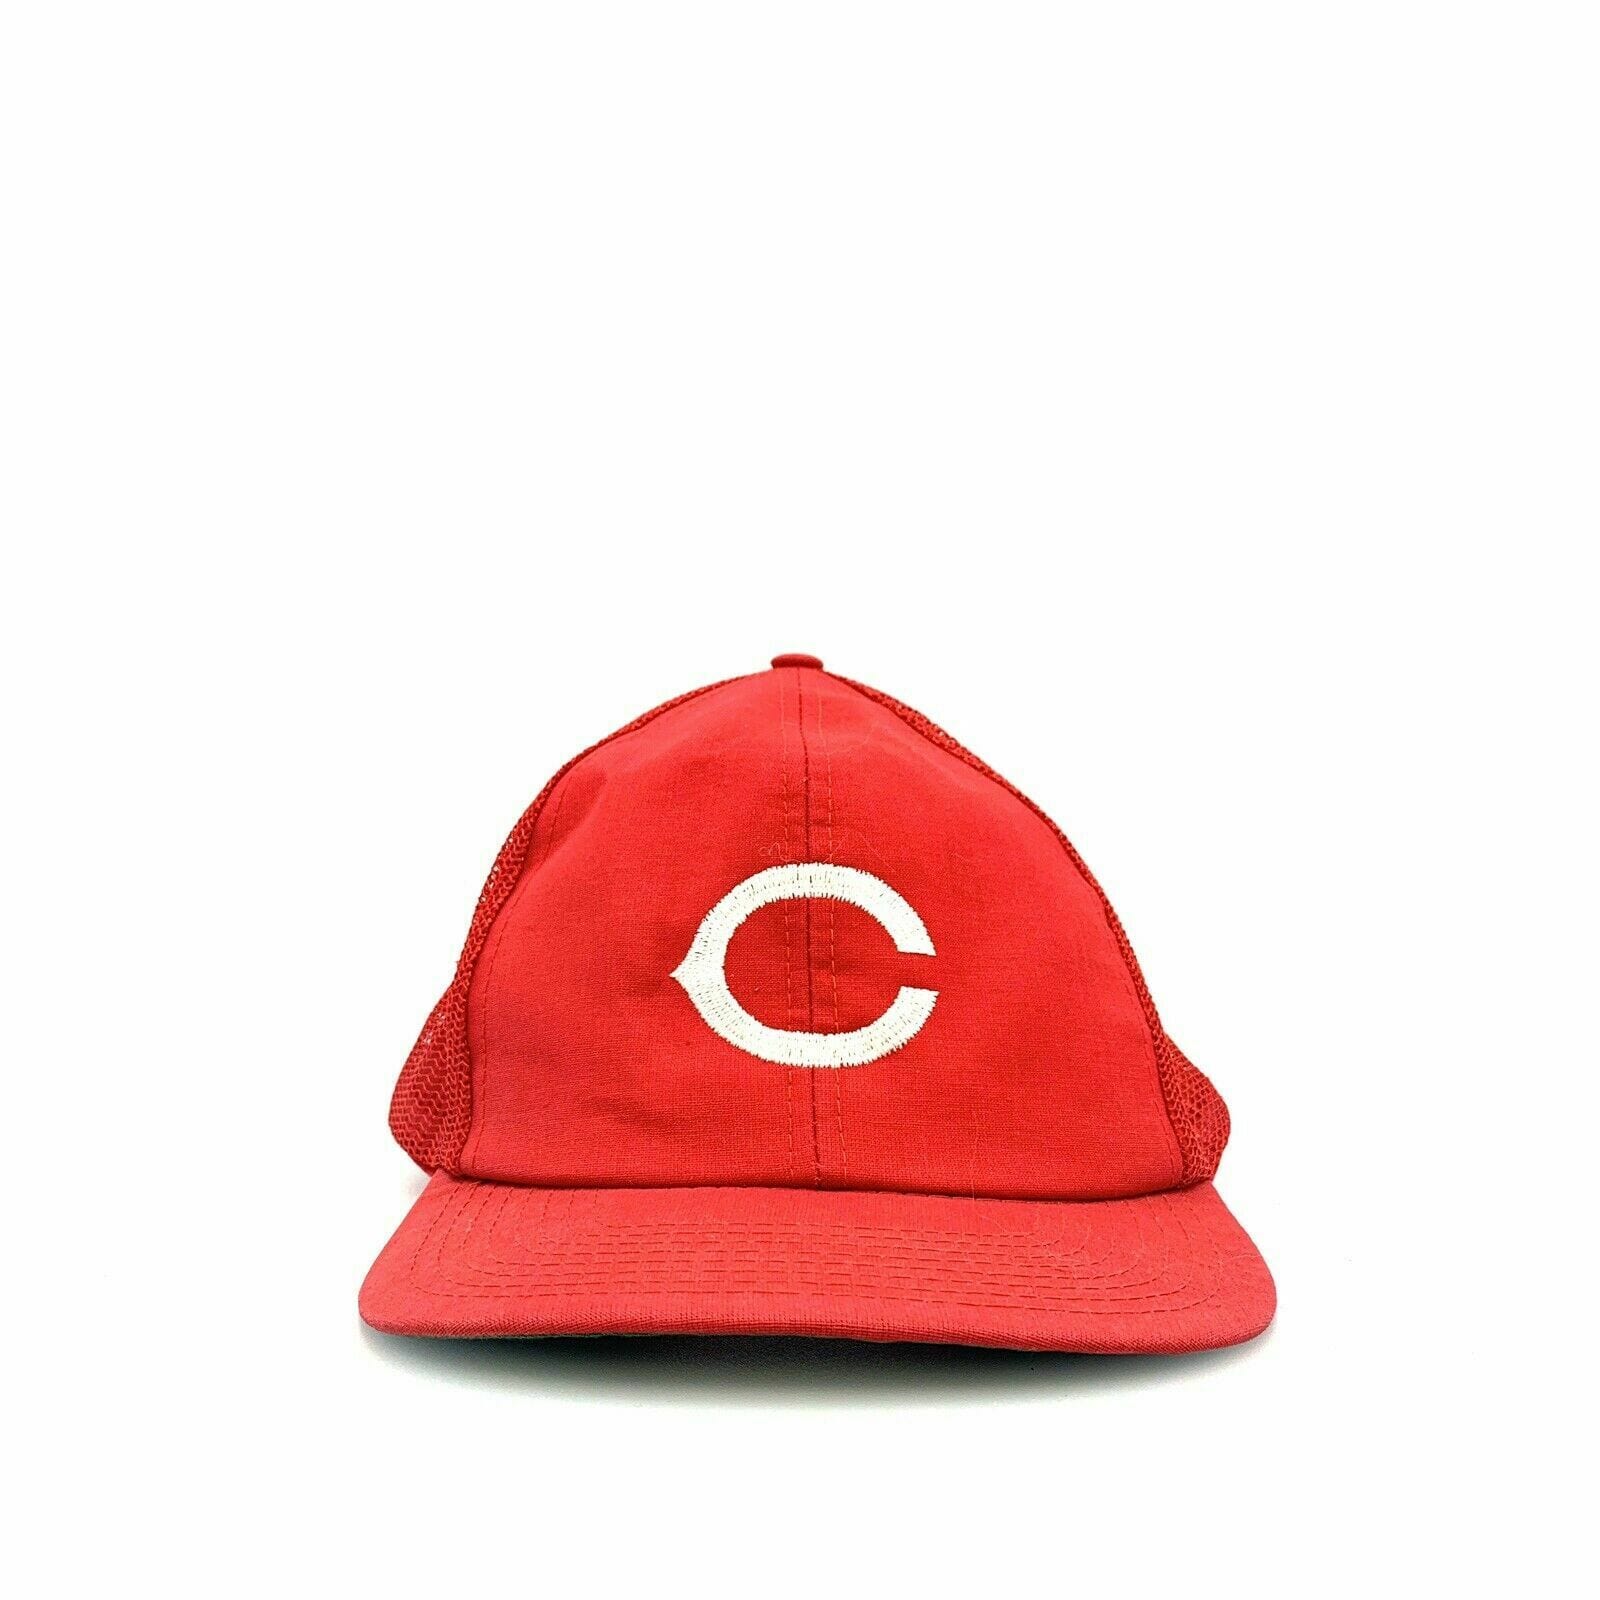 Vintage Twins Enterprises Cincinnati Reds Snapback Trucker Hat, Red - Size M/L - parsimonyshoppes